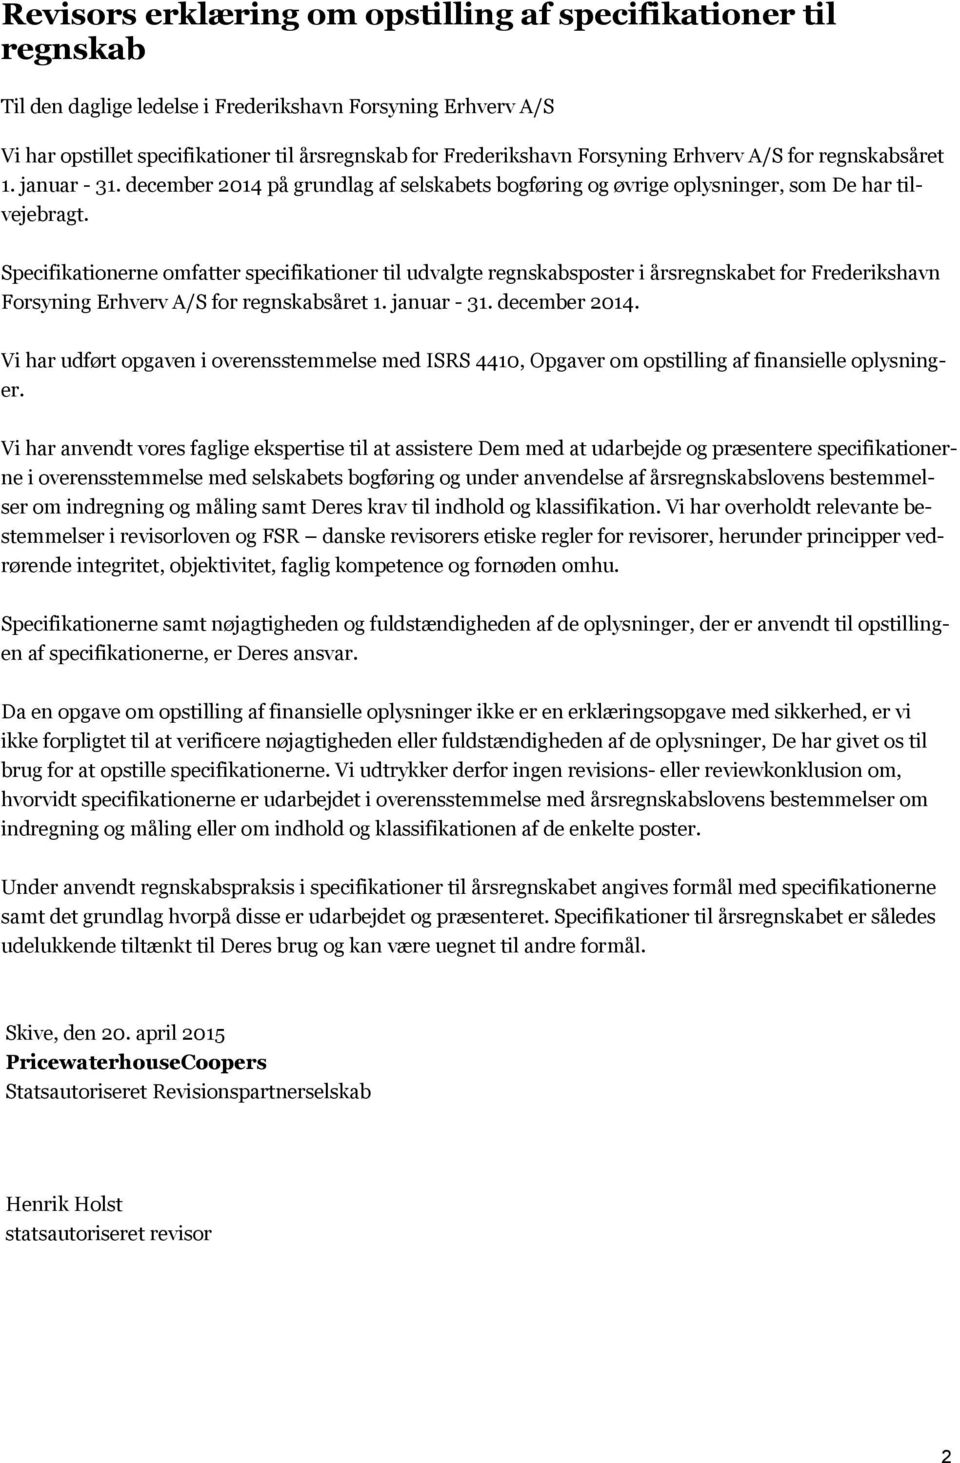 Specifikationerne omfatter specifikationer til udvalgte regnskabsposter i årsregnskabet for Frederikshavn Forsyning Erhverv A/S for regnskabsåret 1. januar - 31. december 2014.